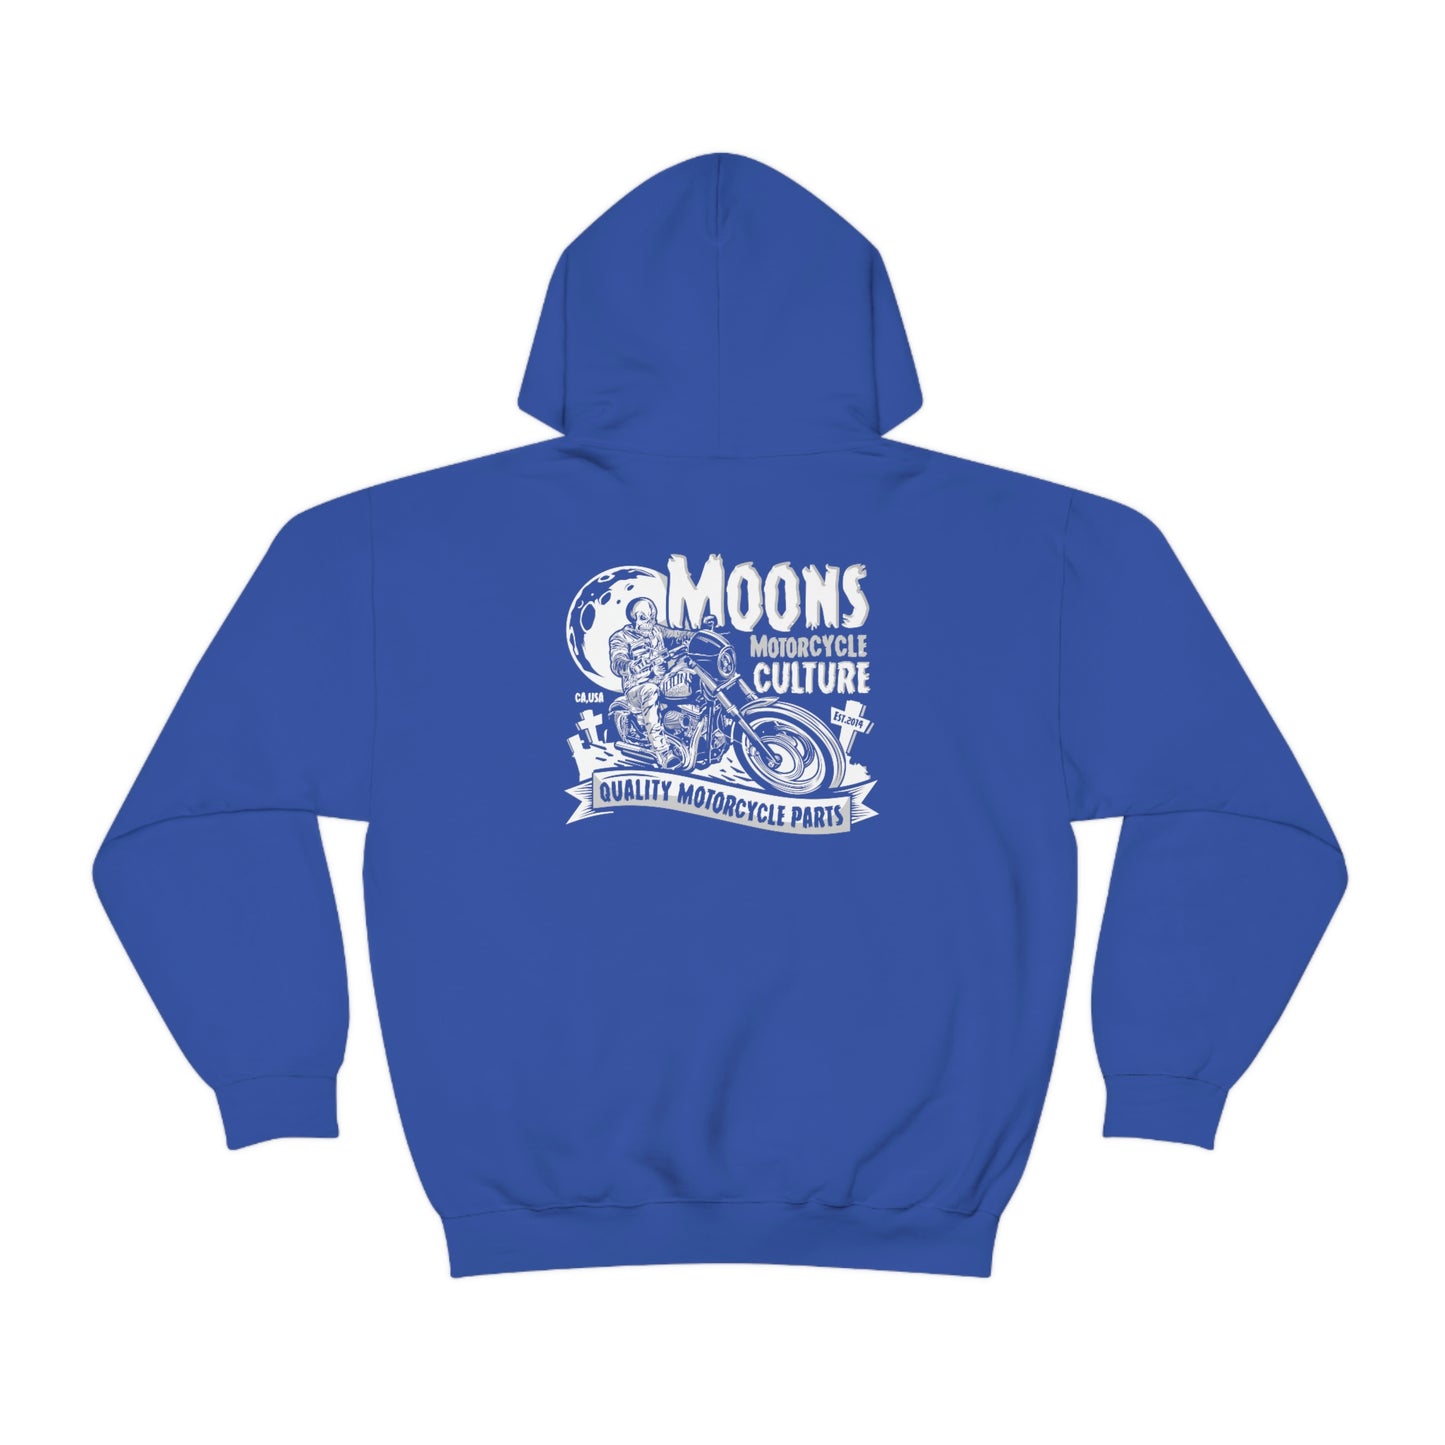 MOONSMC® FXLRS Skull Rider Hooded Sweatshirt